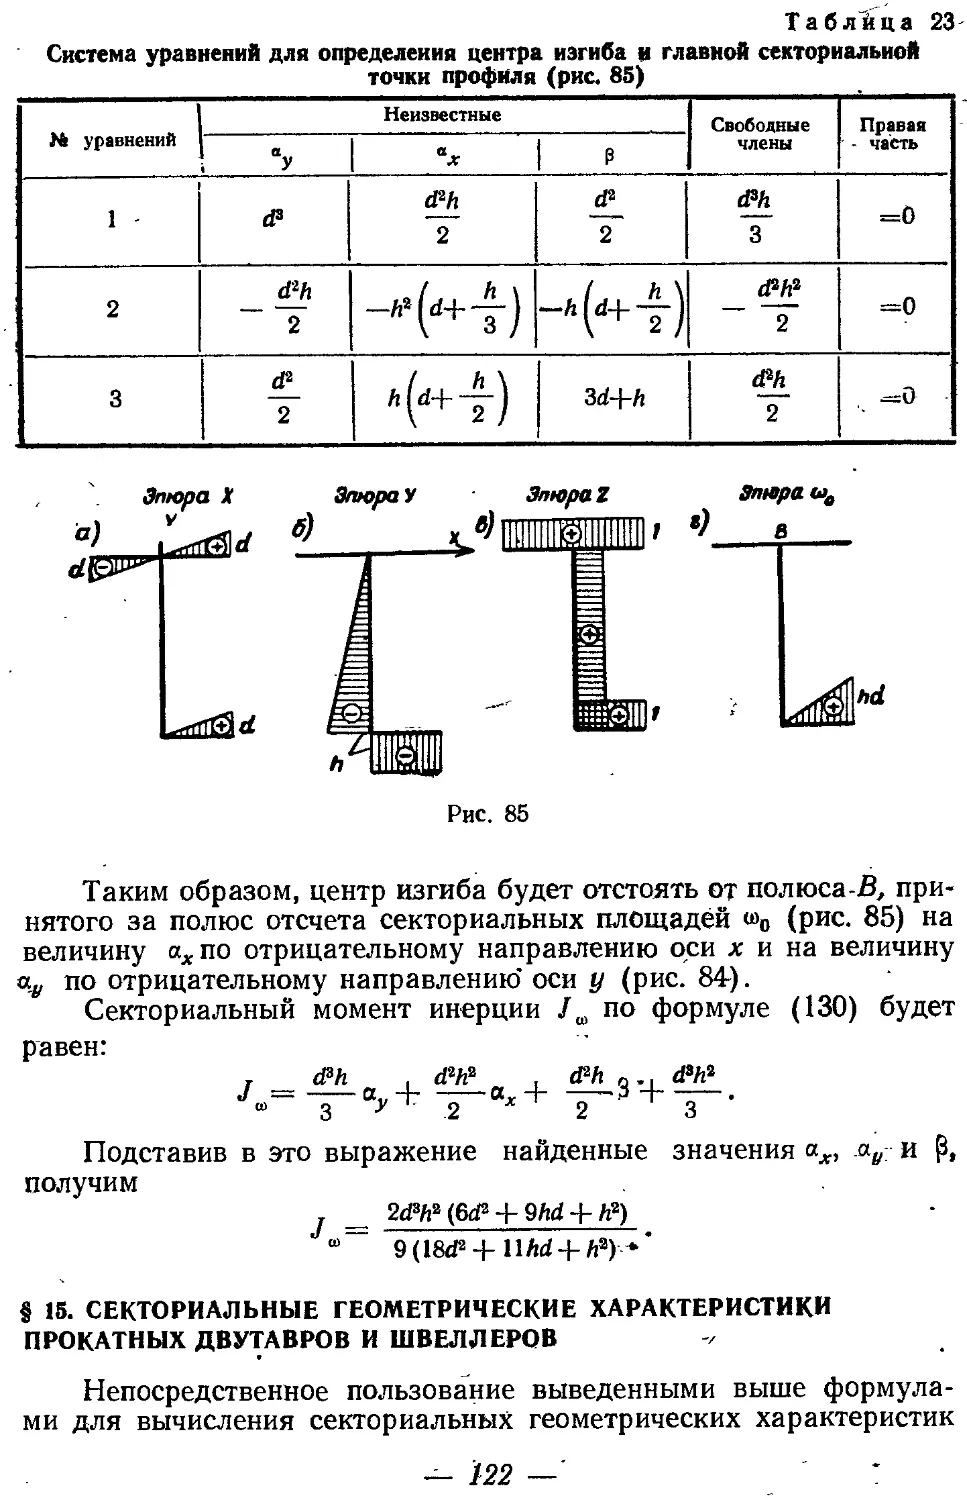 § 15. Секториальные геометрические характеристики прокатных двутавров и швеллеров